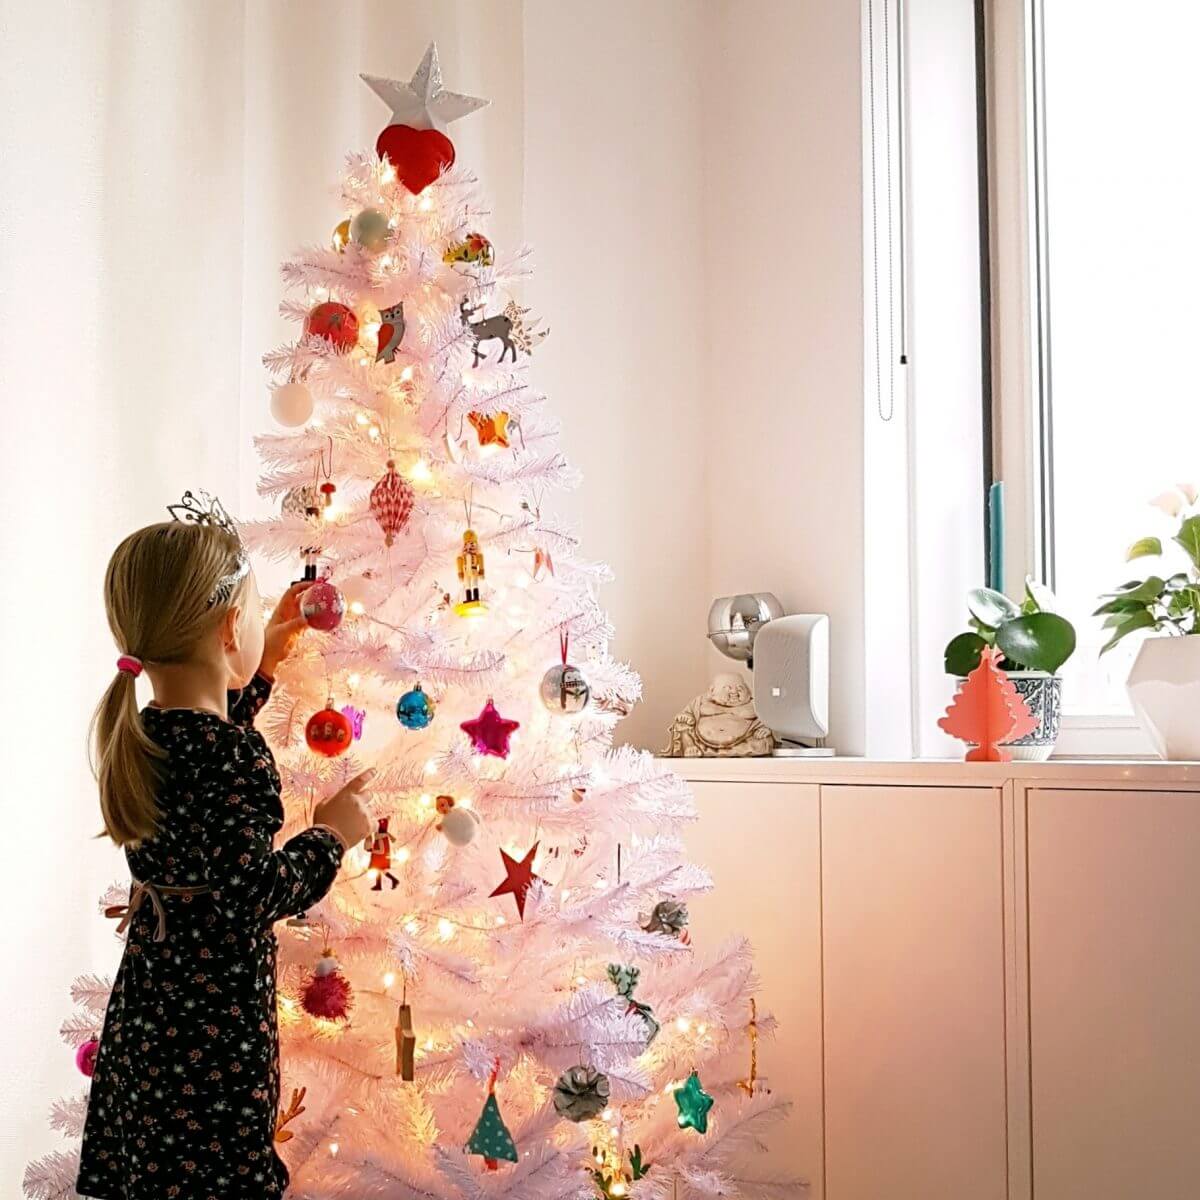 Hilarisch Bedankt Vervelen Ideeën voor een kindvriendelijke kerstboom, ook duurzame keuzes Leuk met  kids